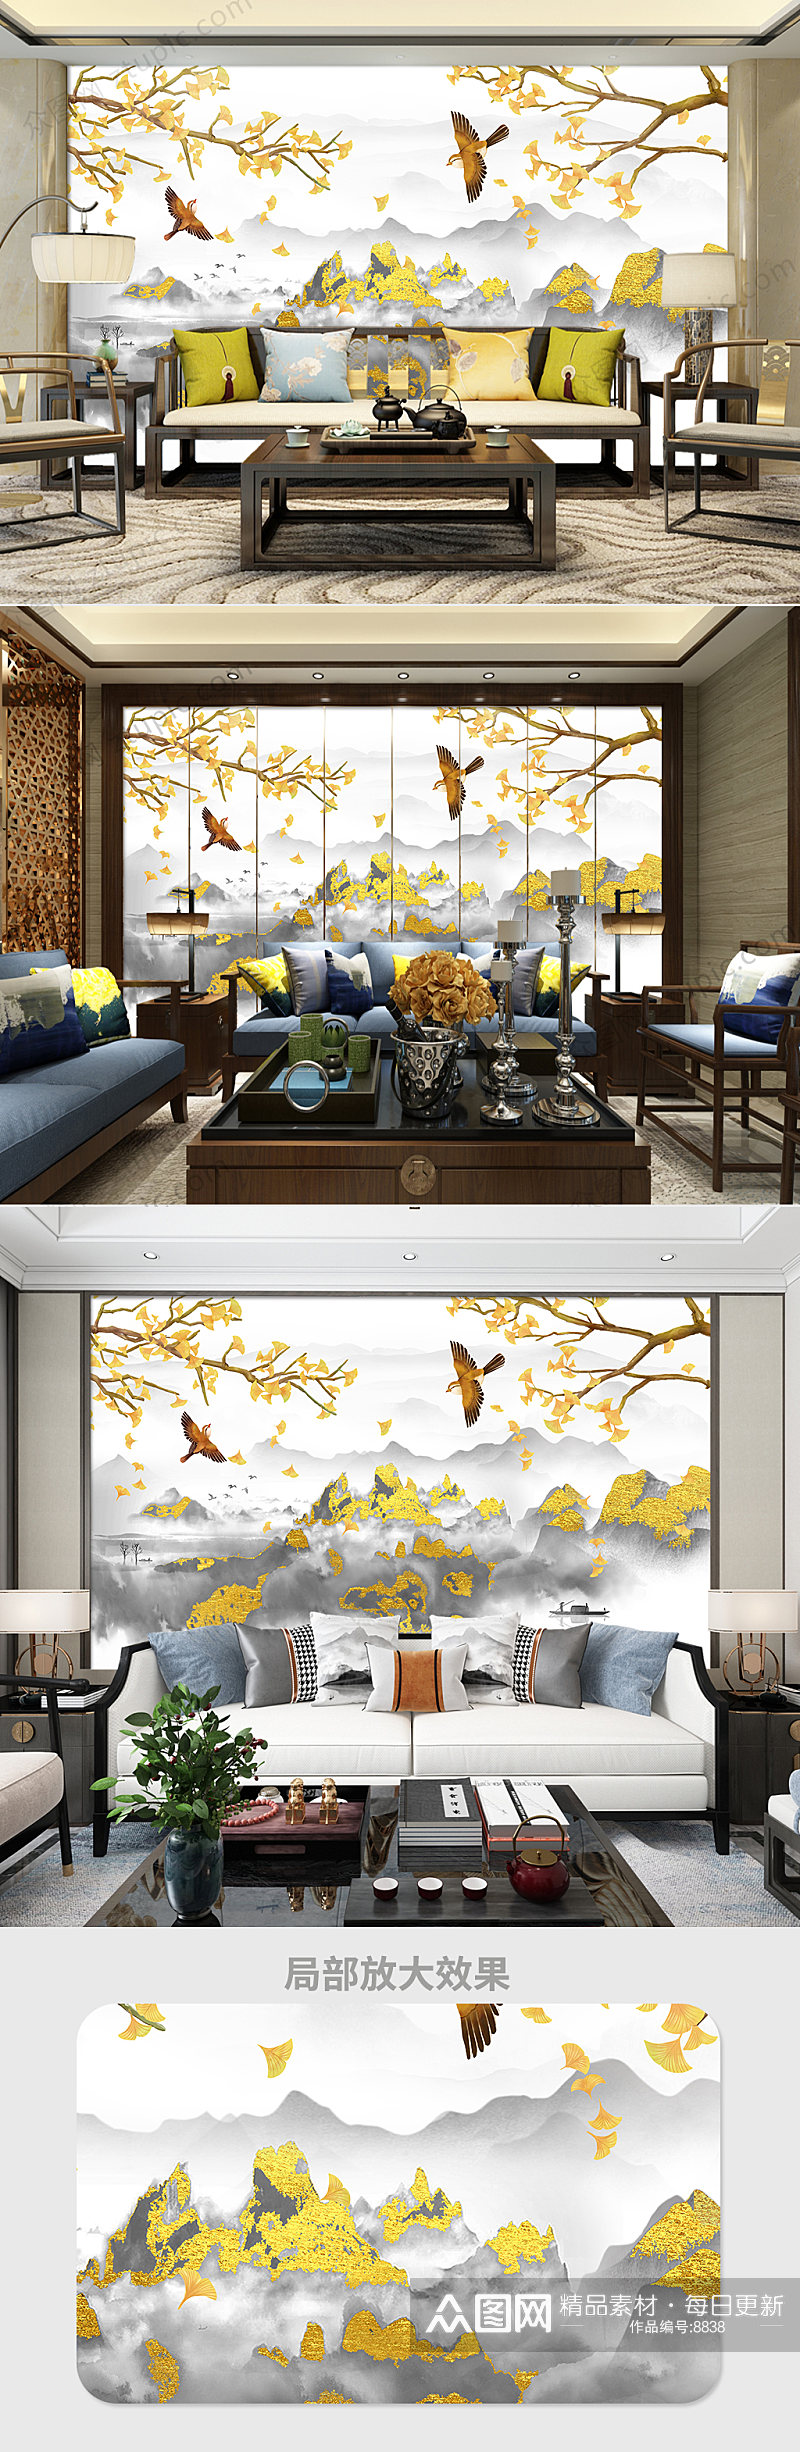 原创新中式银杏手绘花鸟背景墙装饰画素材